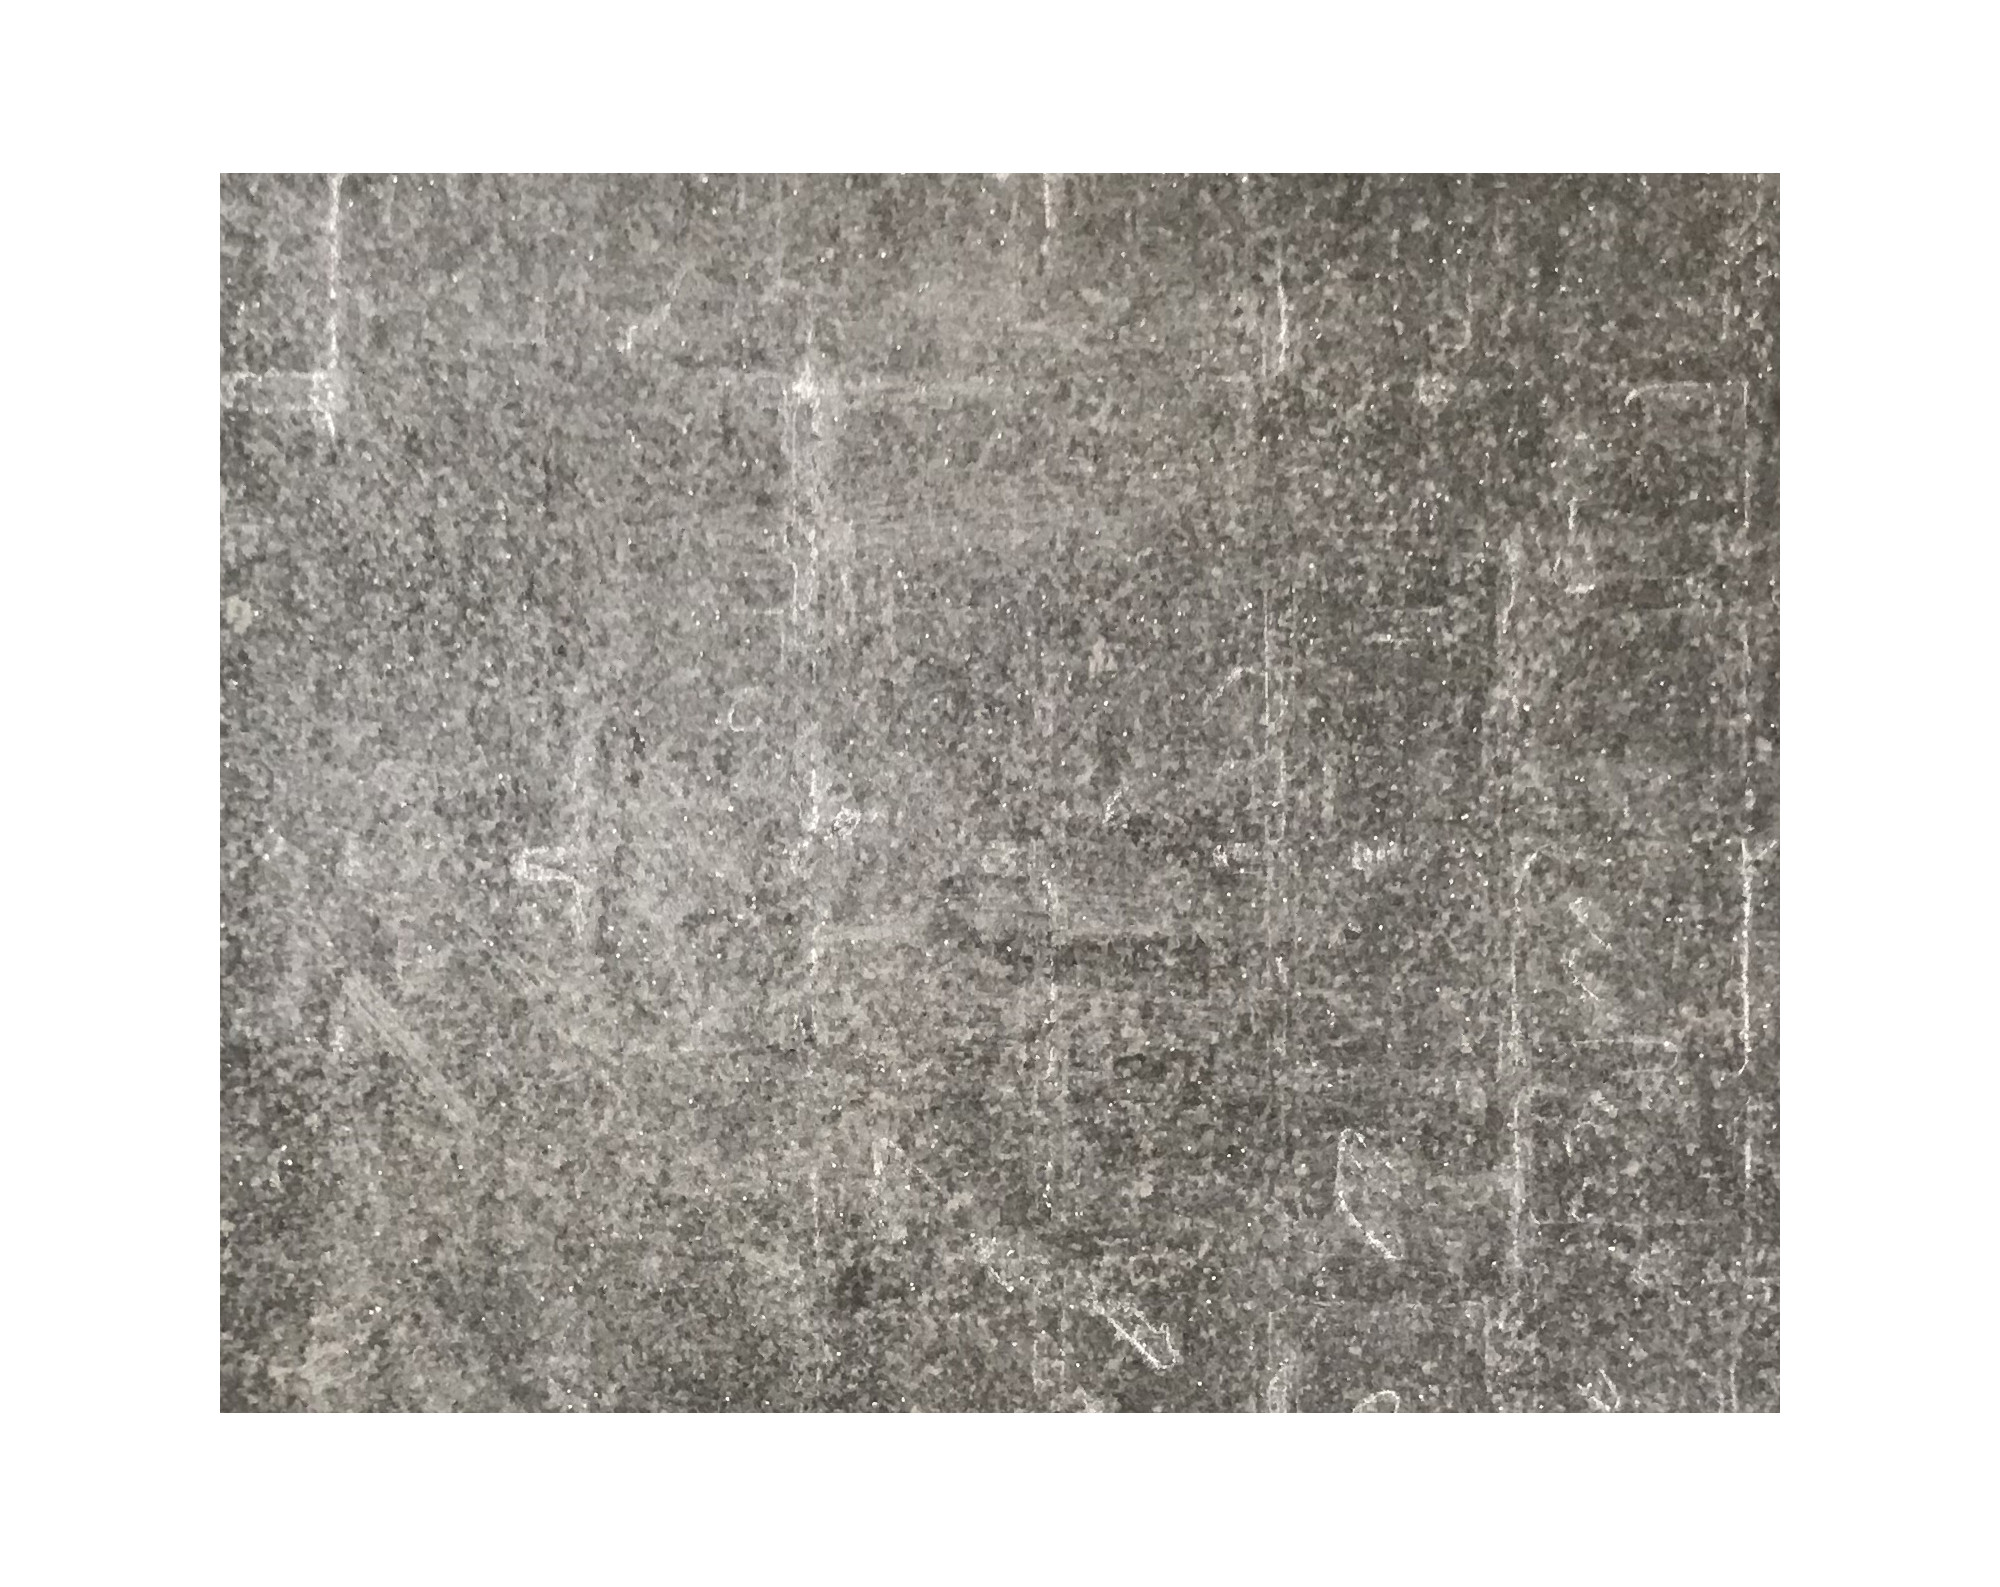 Harmo roc maranelloset, keramiek-serie, ovaal d: 6,00mx11,30m, zand zwart, keramisch porselein